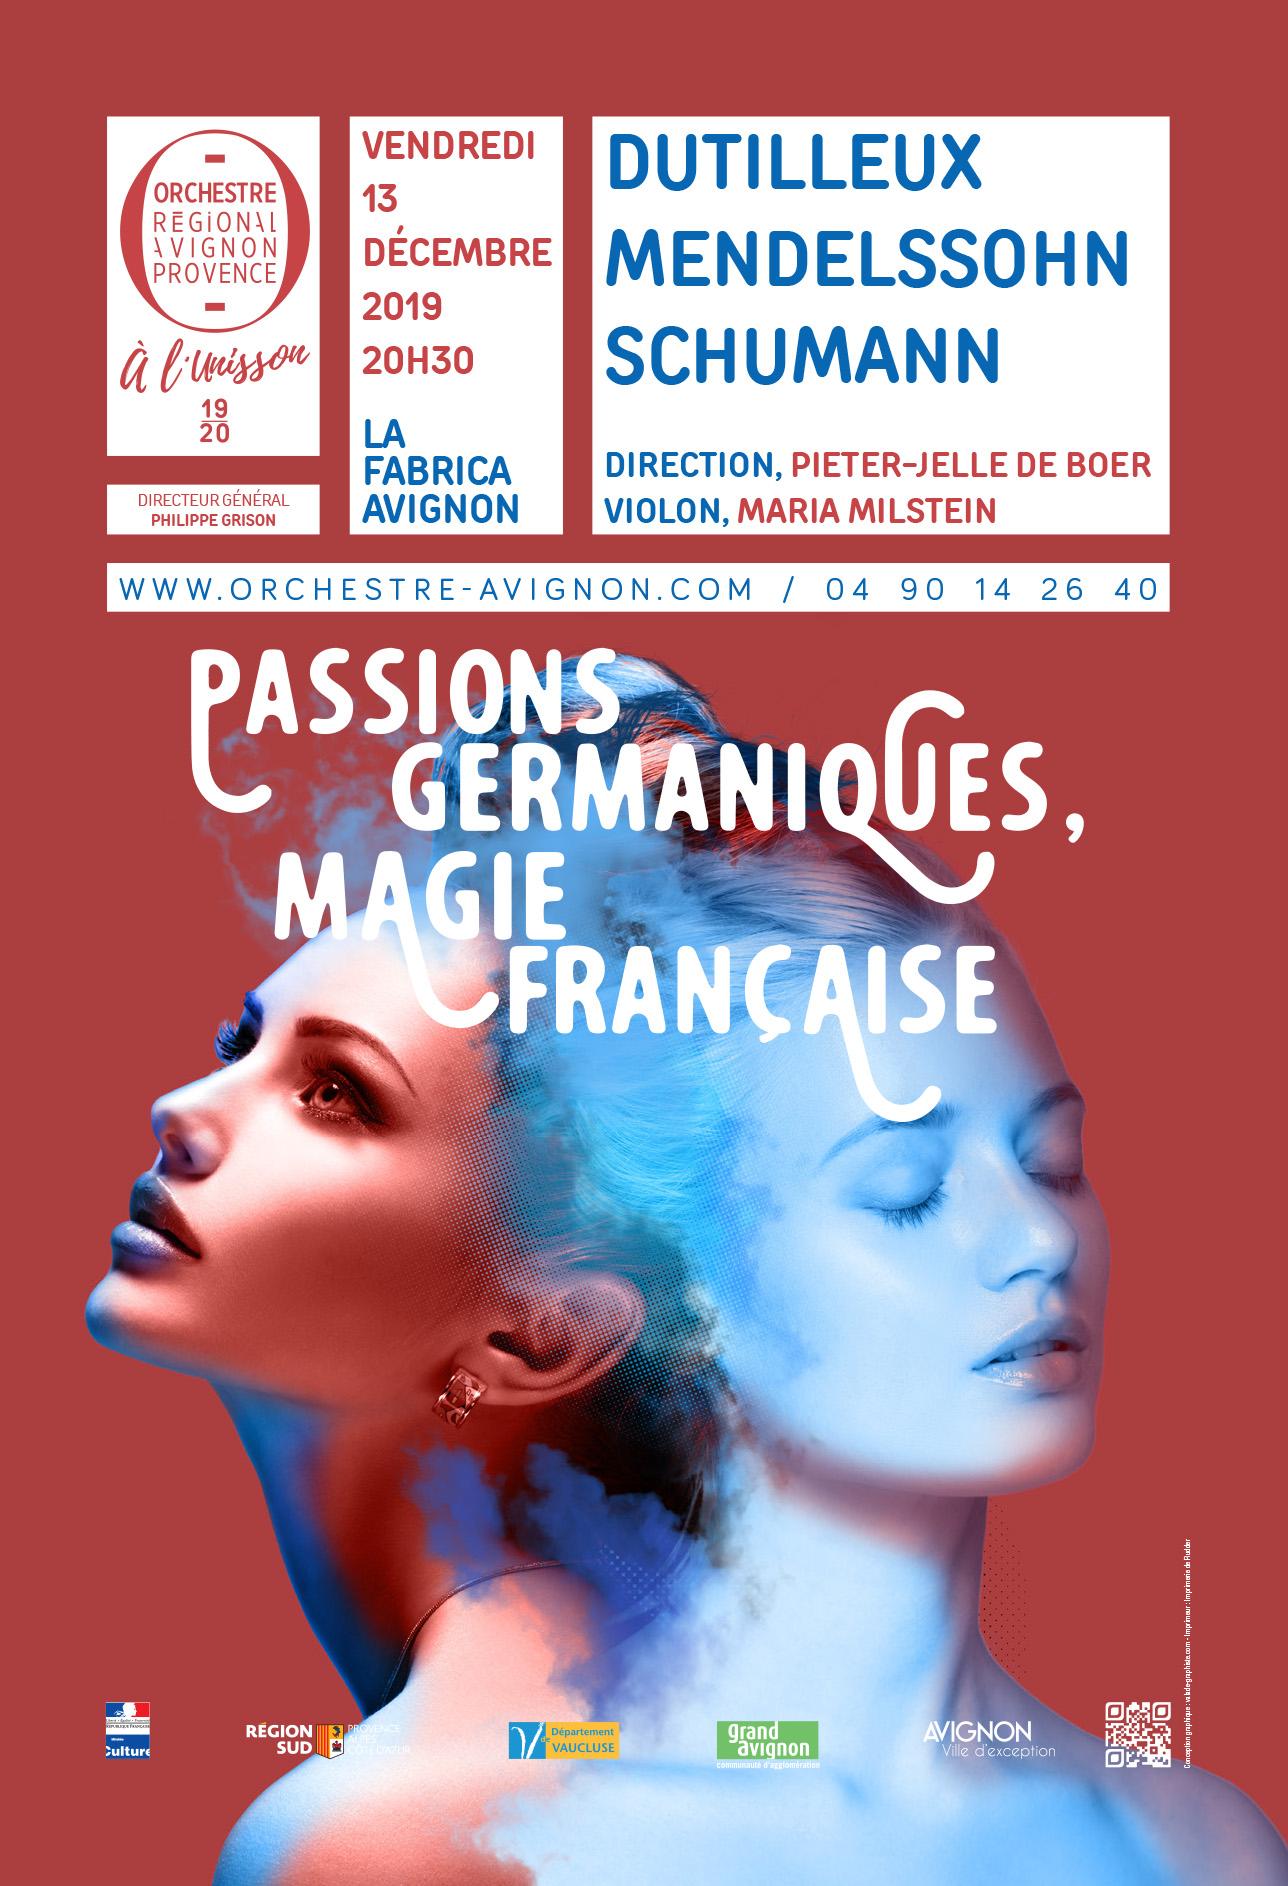 Concert symphonique Avignon Dutilleux Mendelssohn Schumann